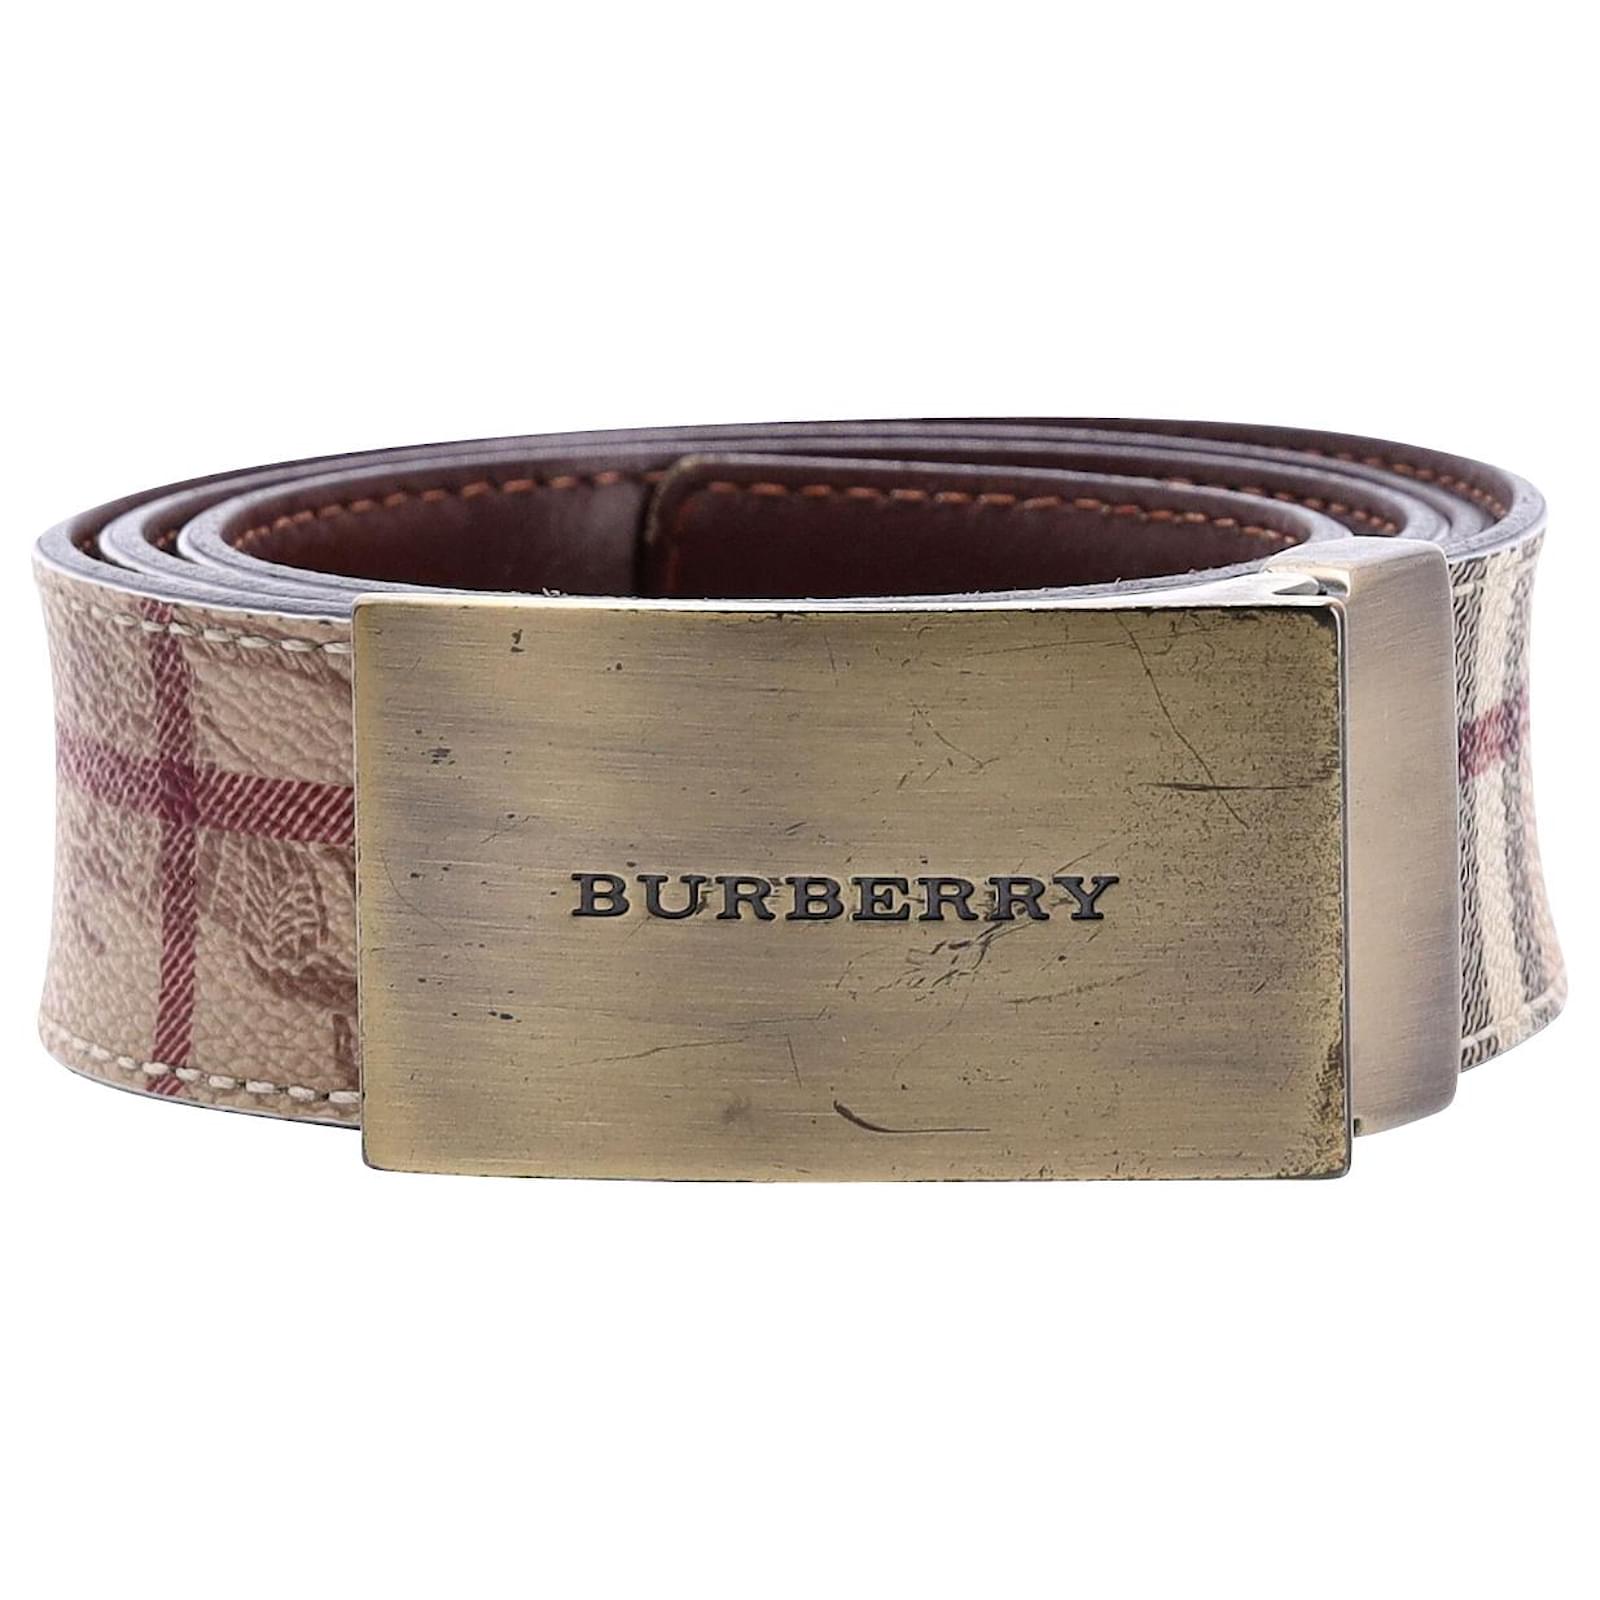 burberry belt buckles